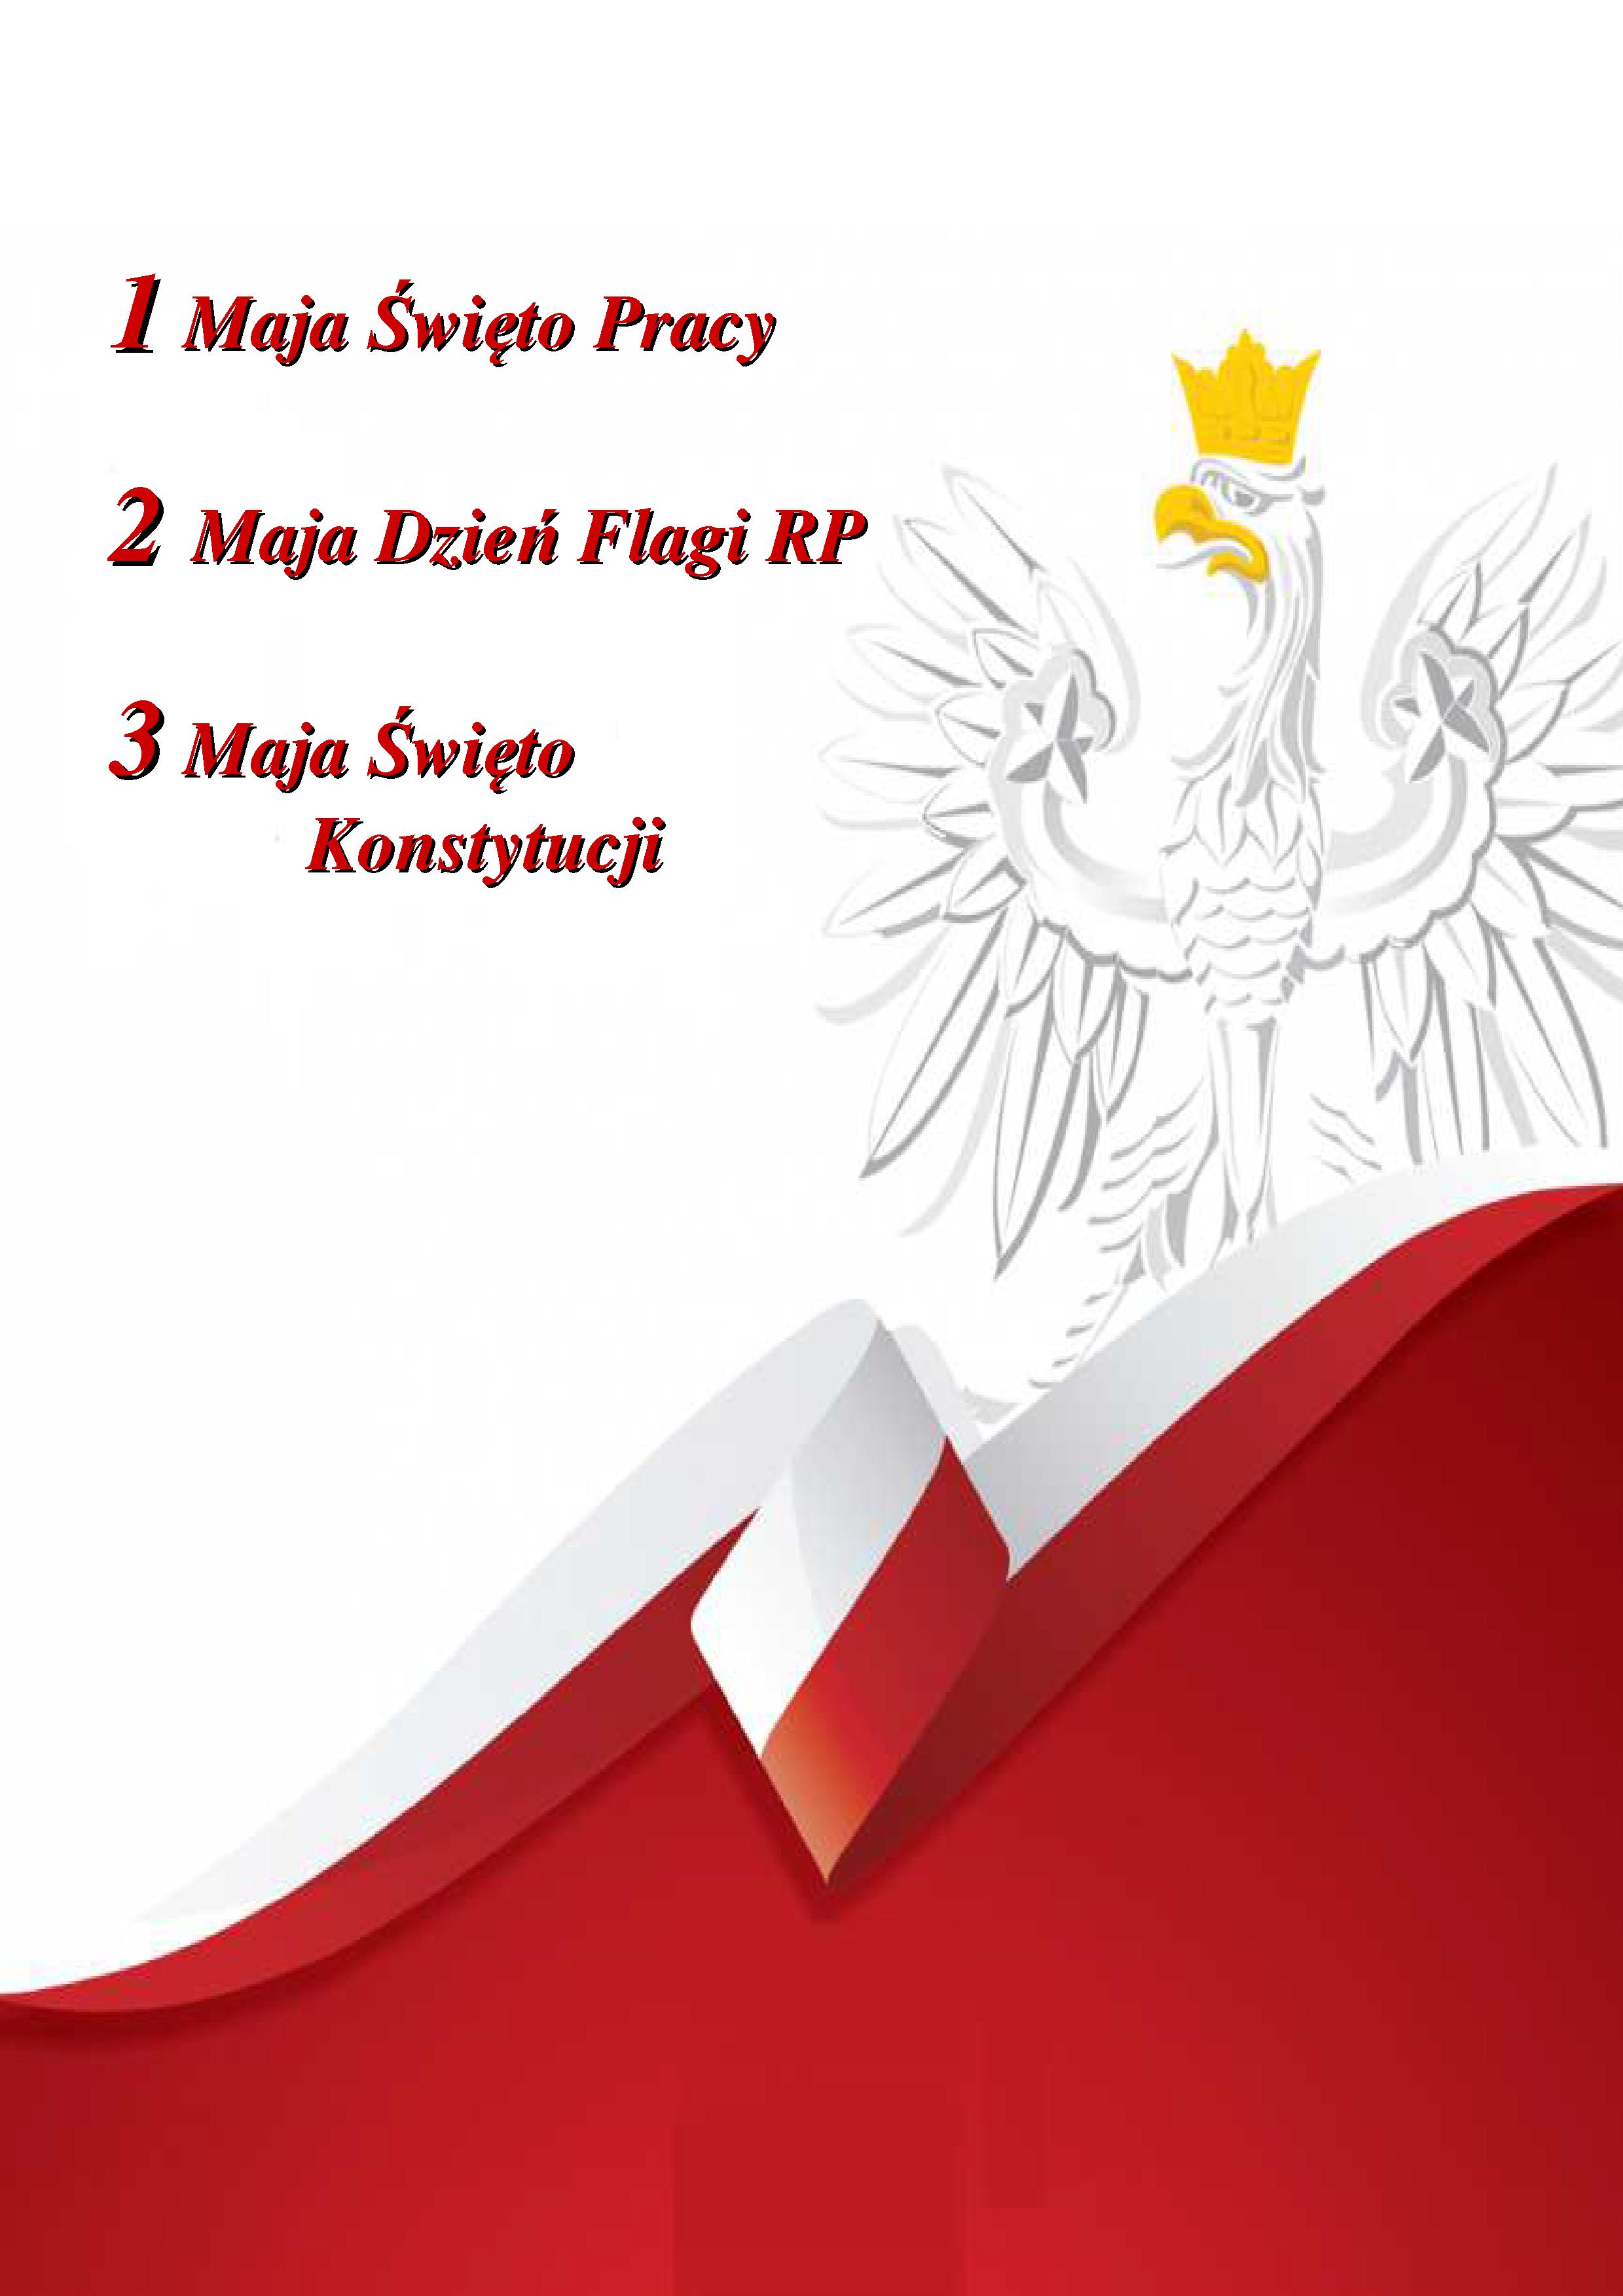 biało czerwone tło z flaga polski, po prawej stronie orzeł 1 Maja Święto Pracy 2 Maja Dzień Flagi RP 3 Maja Święto Konstytucji 